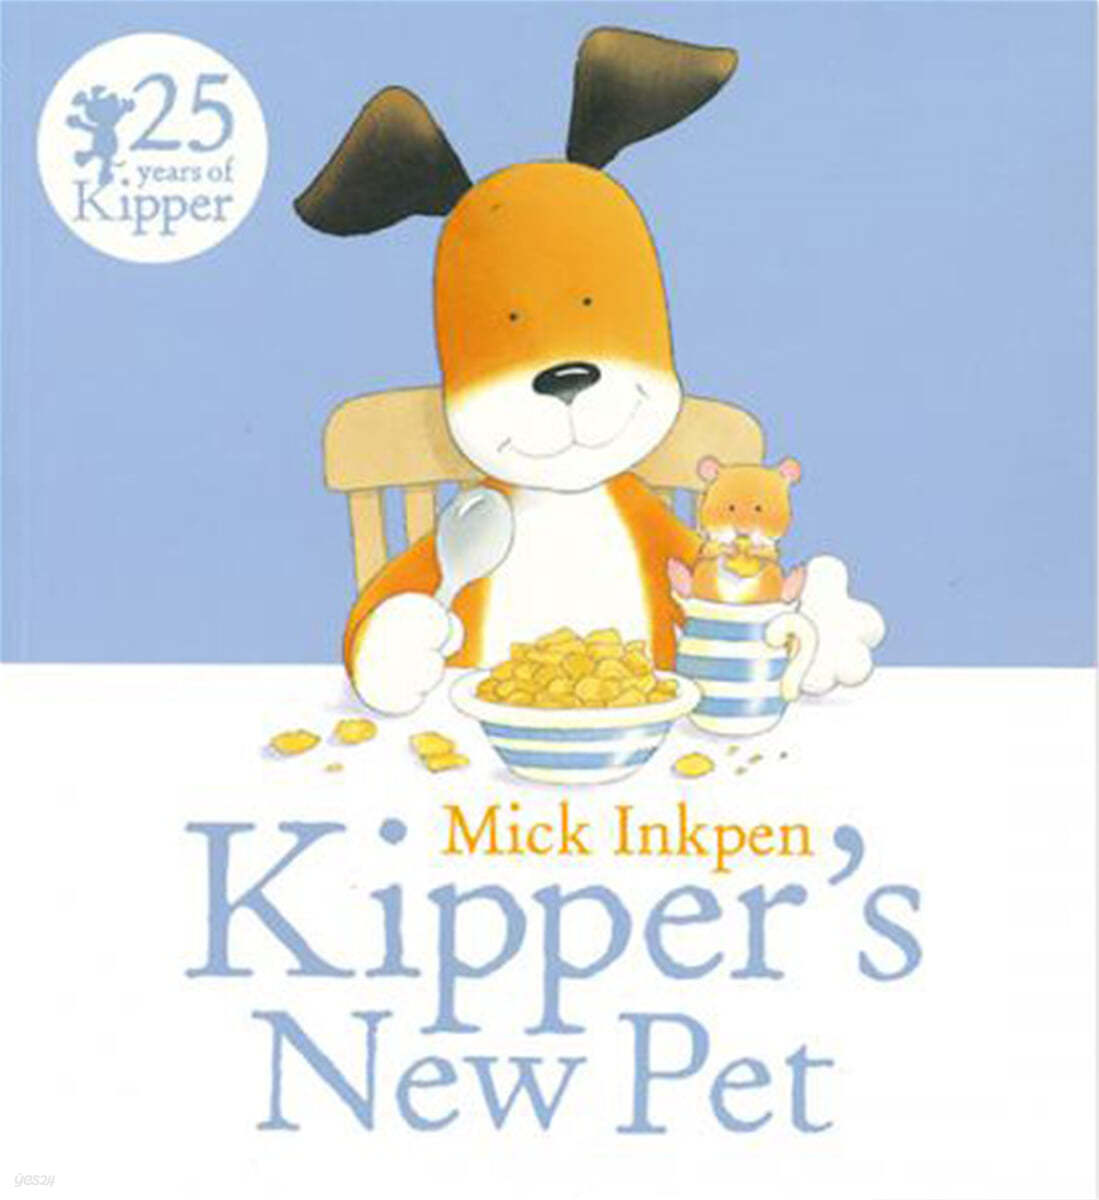 Kipper's new pet